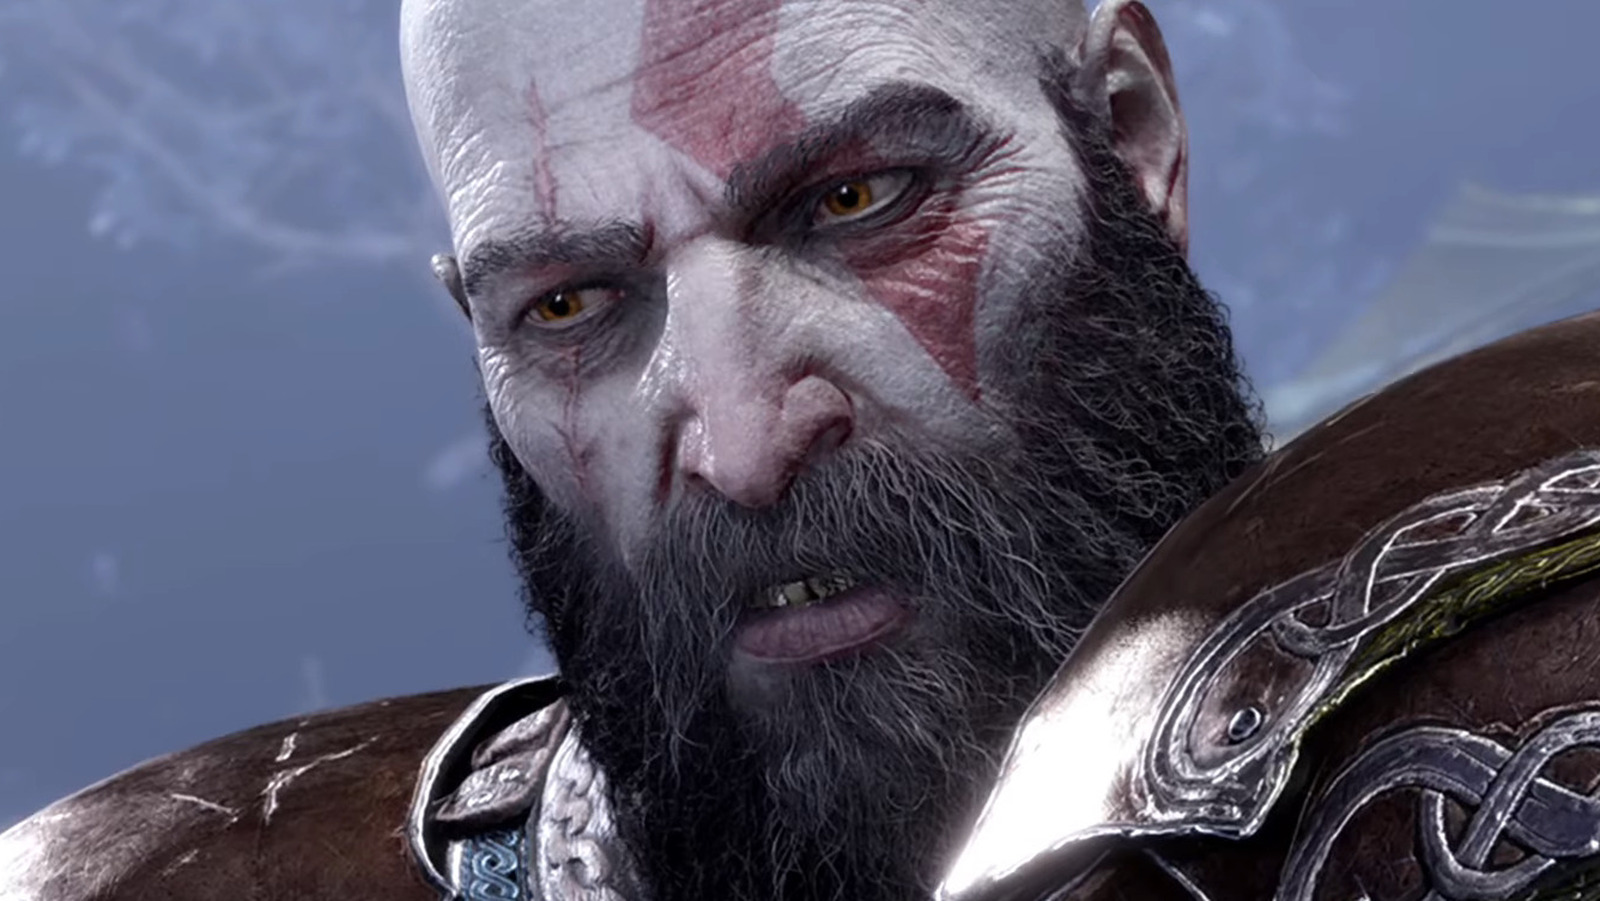 God of War Ragnarök, Call of Duty Warzone 2.0, More: November